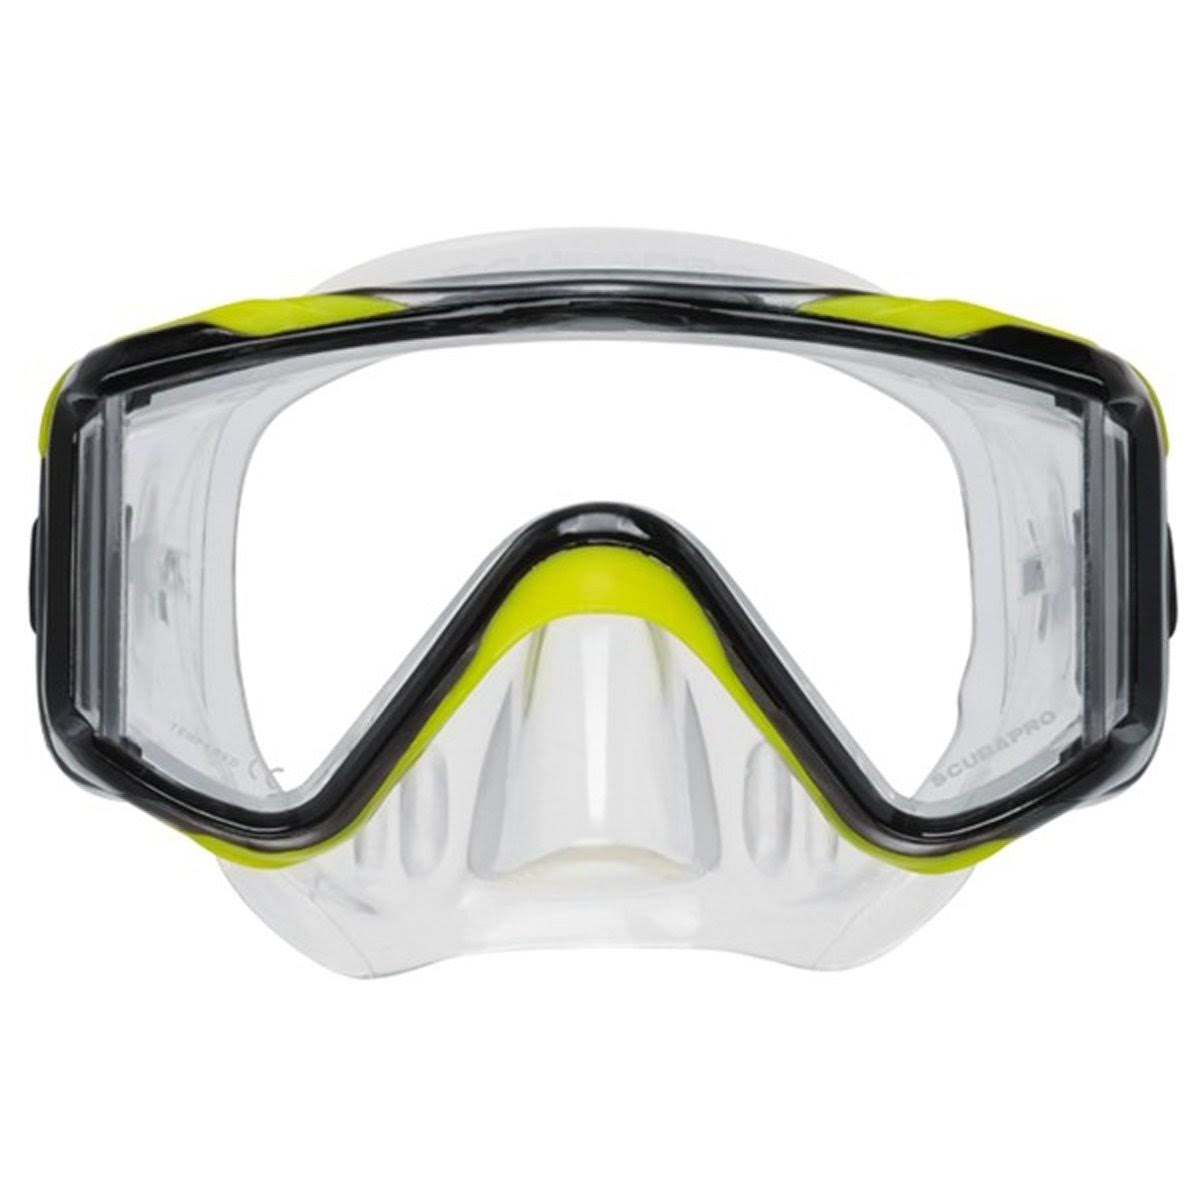 Scubapro Crystal Vu Plus Dive Mask - Black & Clear